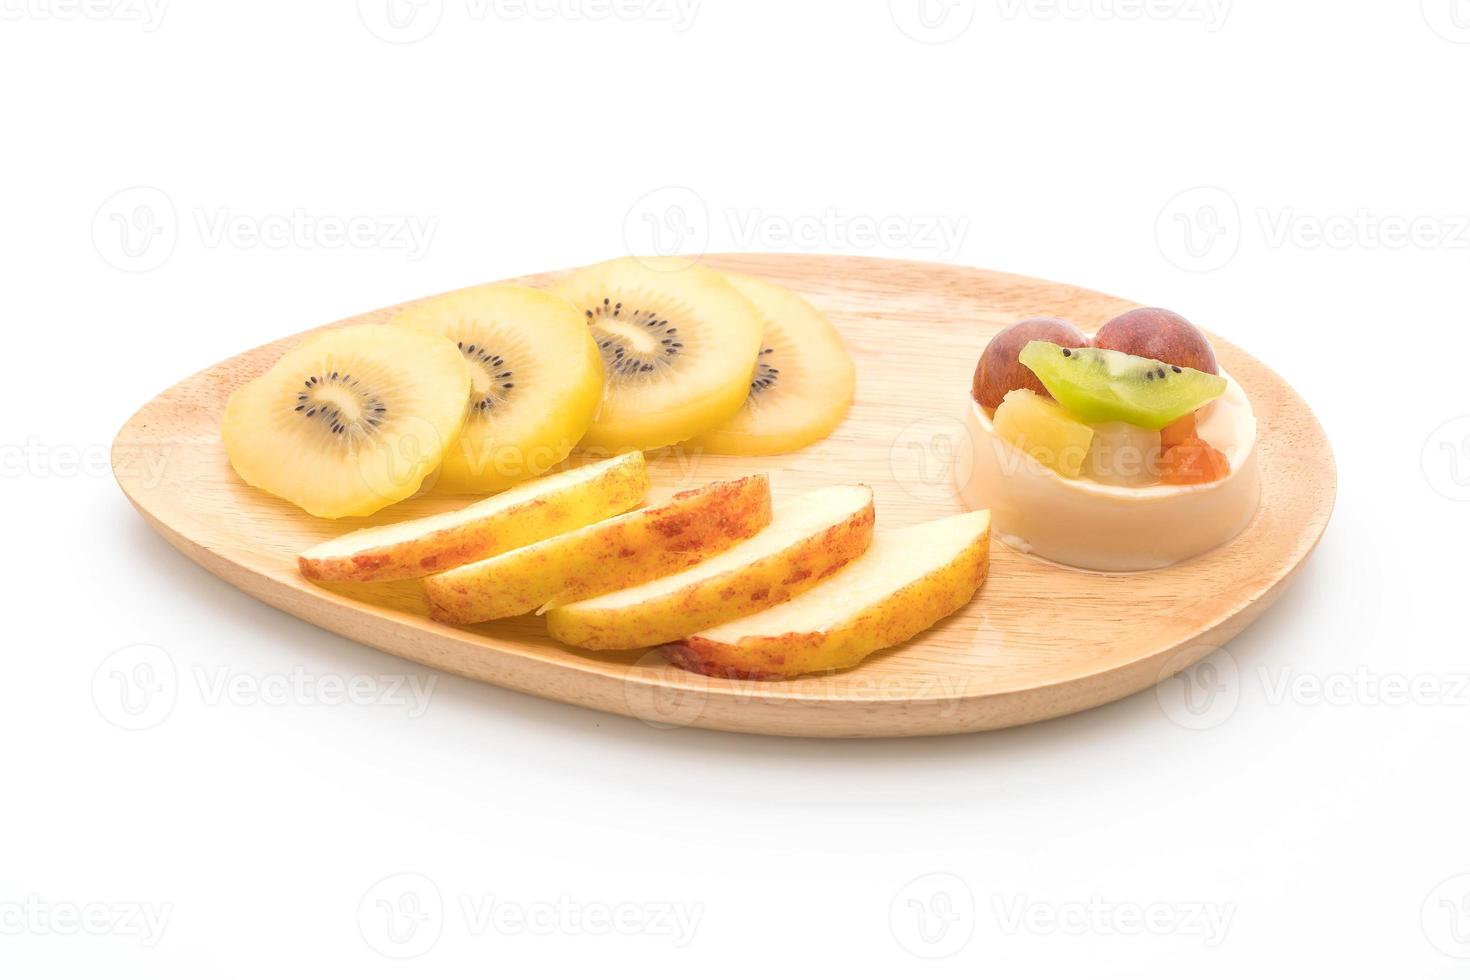 puddingvruchten met kiwi en appel op tafel foto